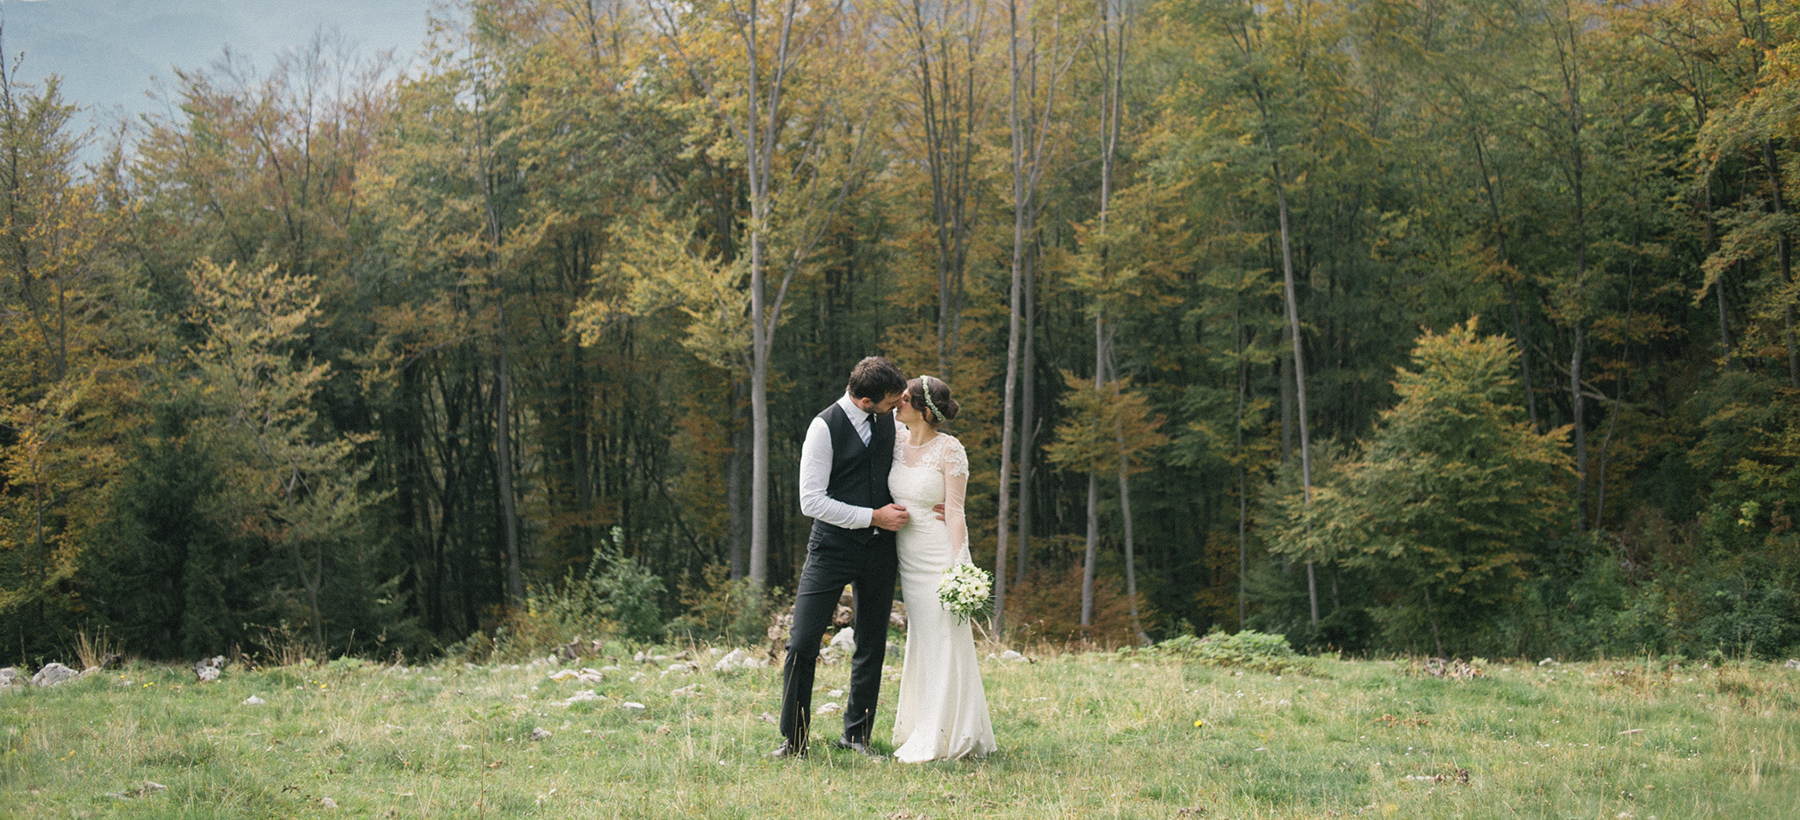 Poročno fotografiranje na travniku.